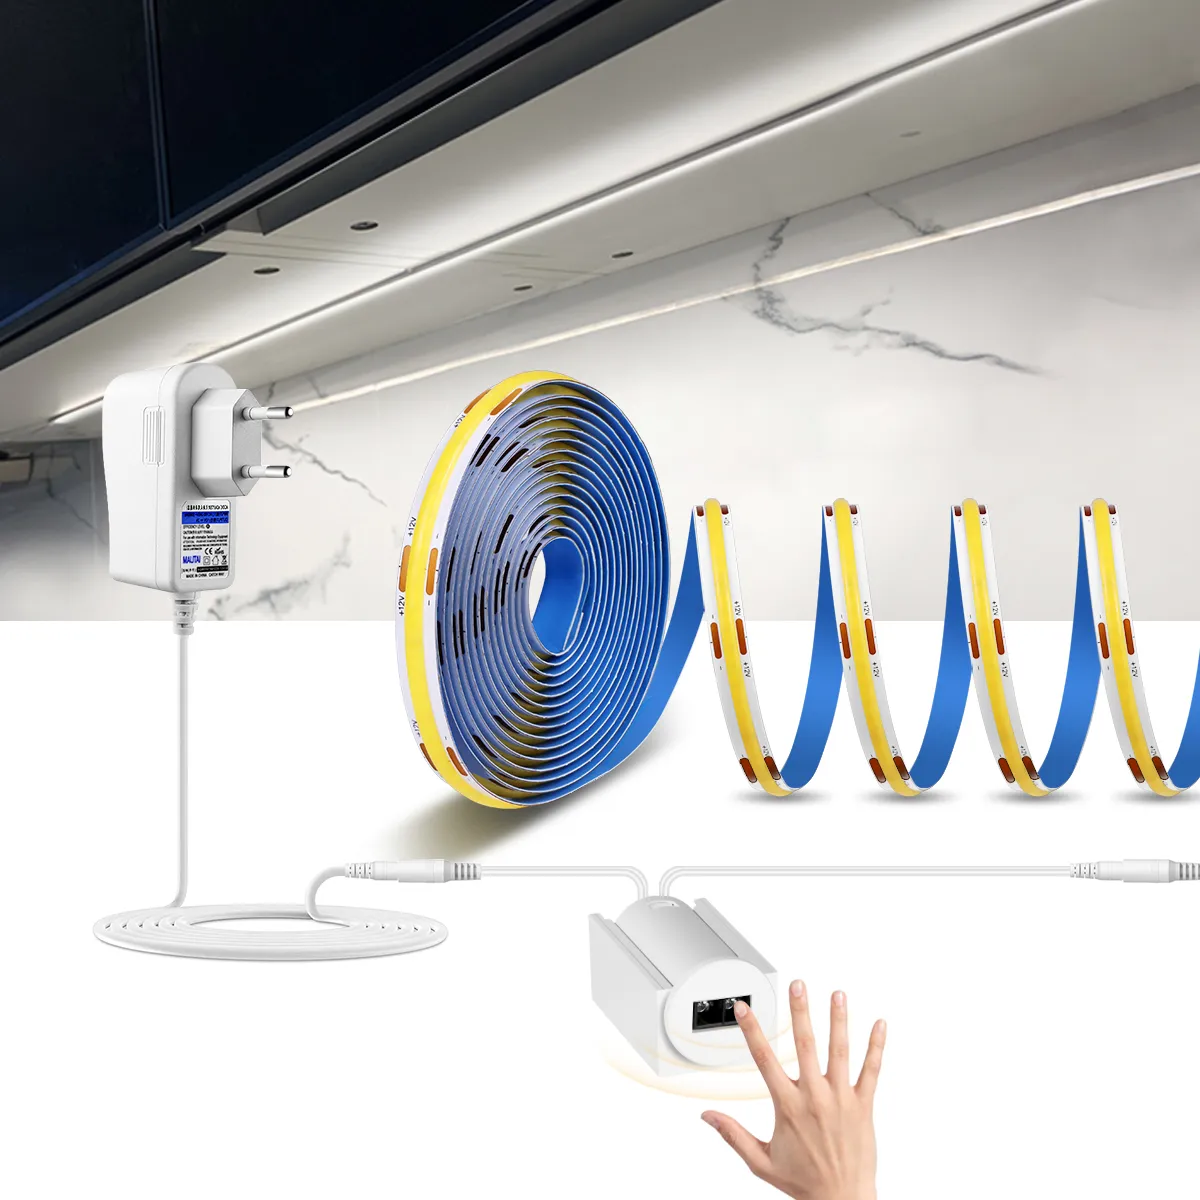 Bande LED COB Flexible haute luminosité CRI 90, 12V, capteur de balayage manuel, interrupteur, bande lumineuse LED, rétro-éclairage pour armoire de cuisine, lampe de décoration